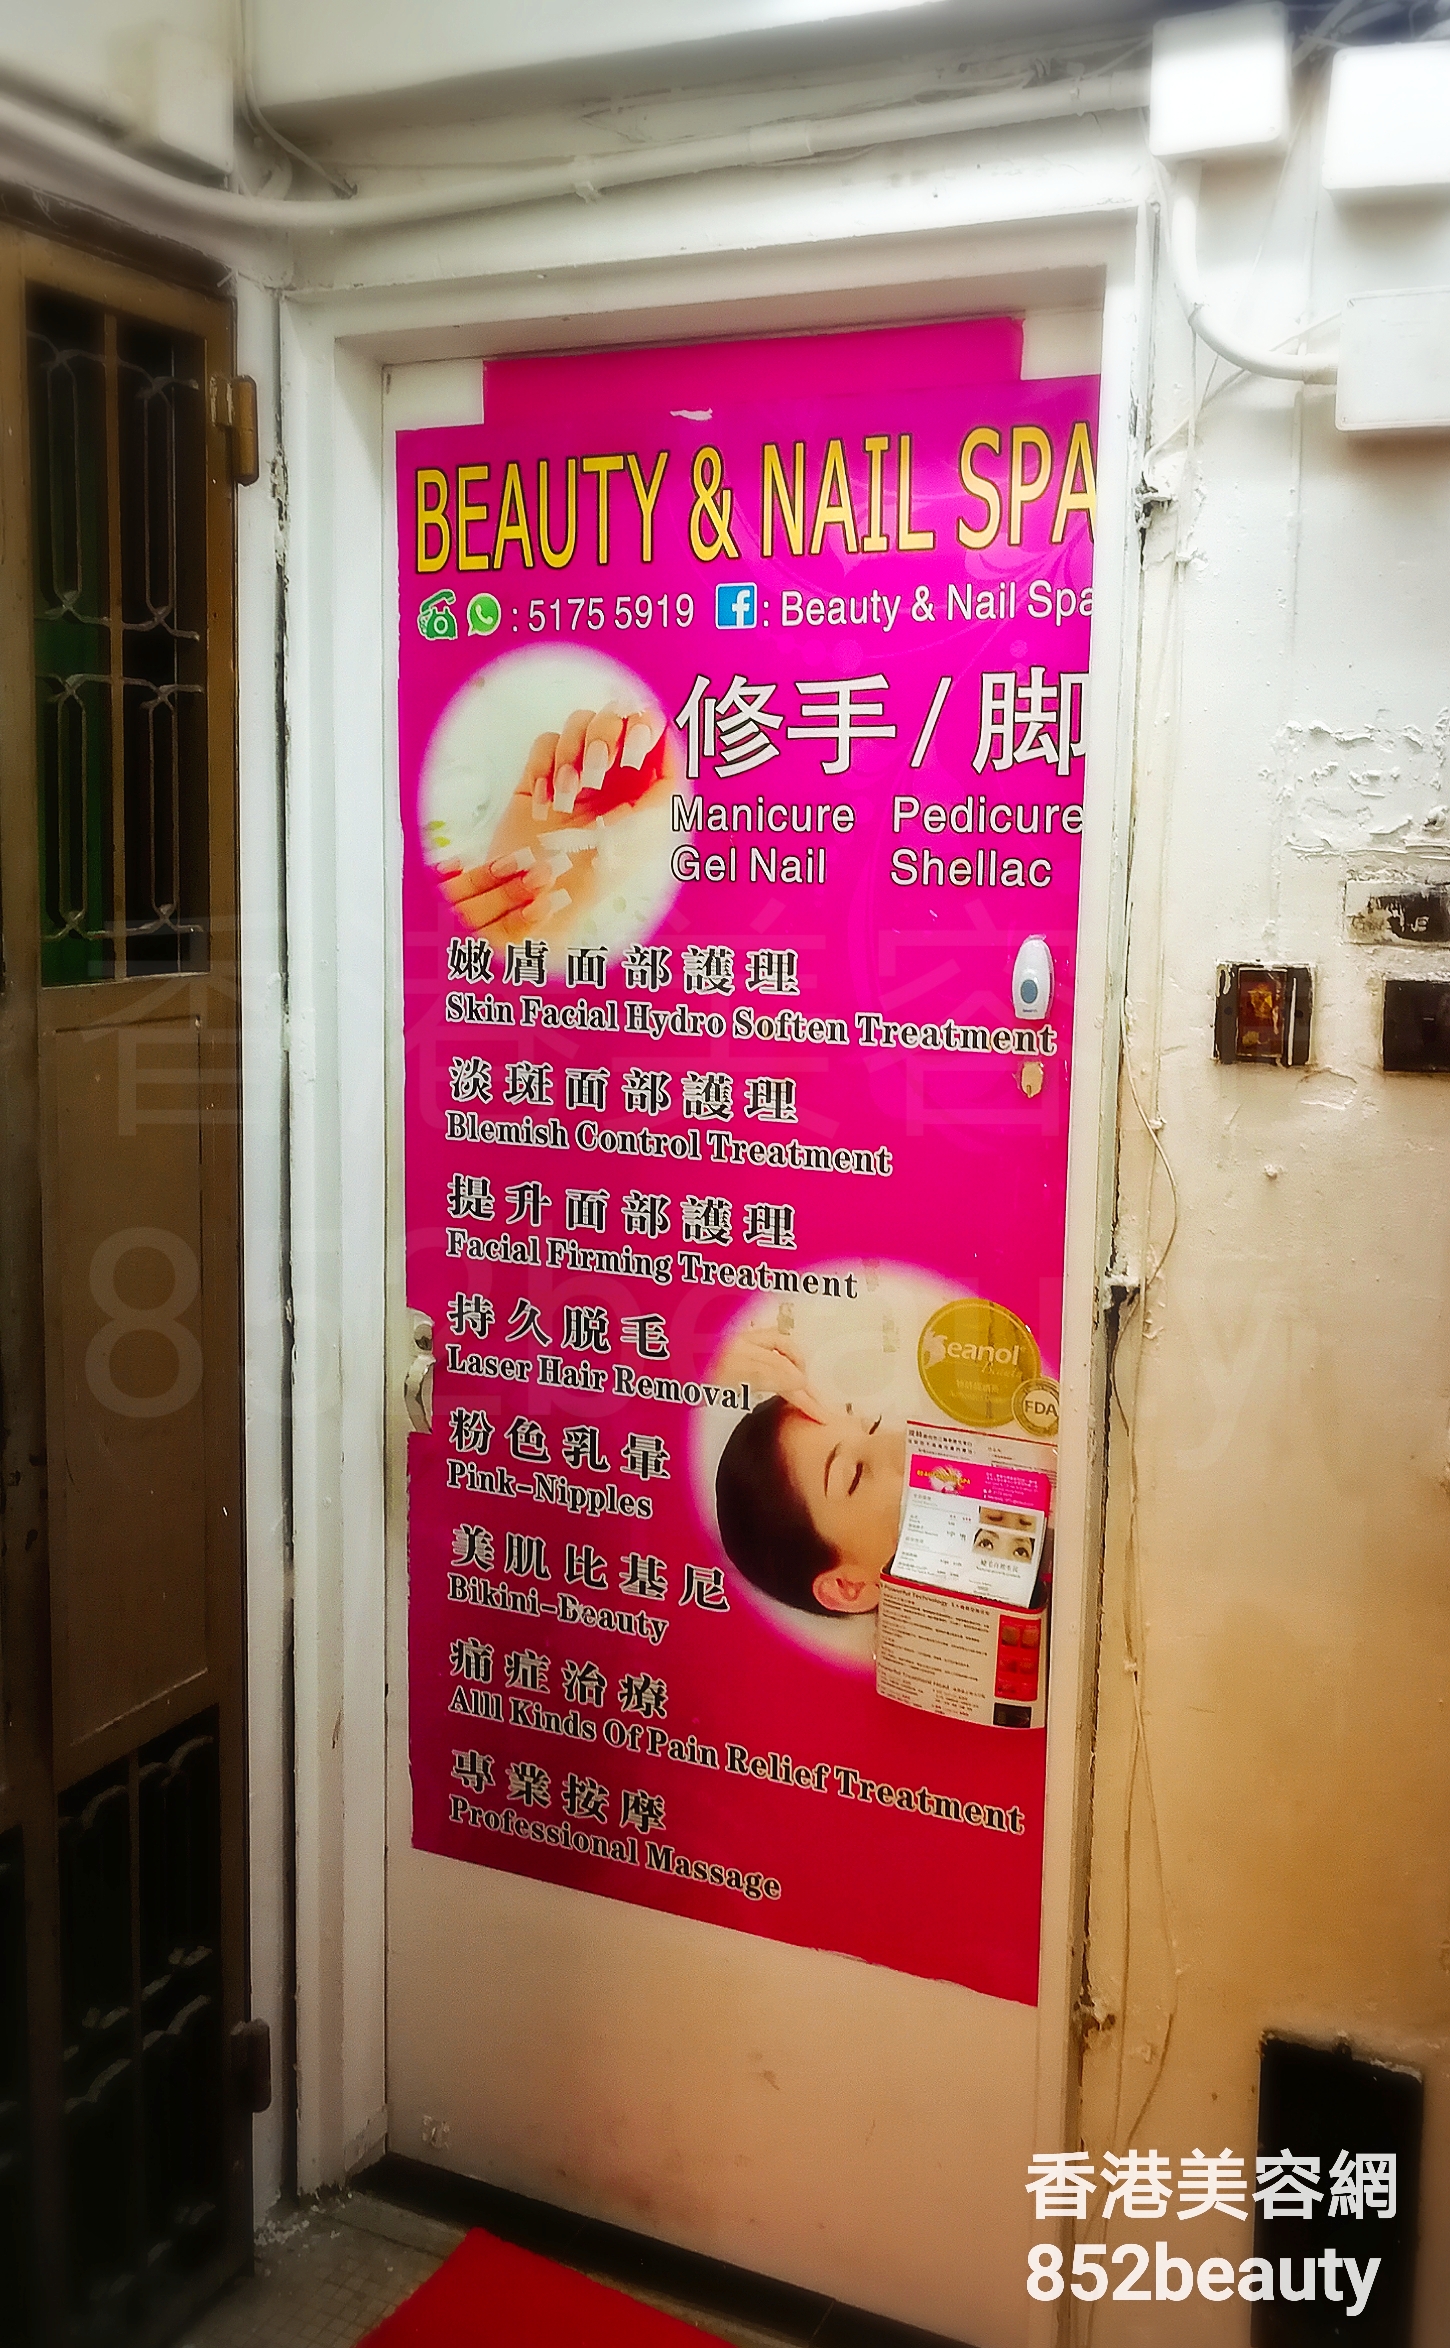 Manicure: Beauty & Nail Spa